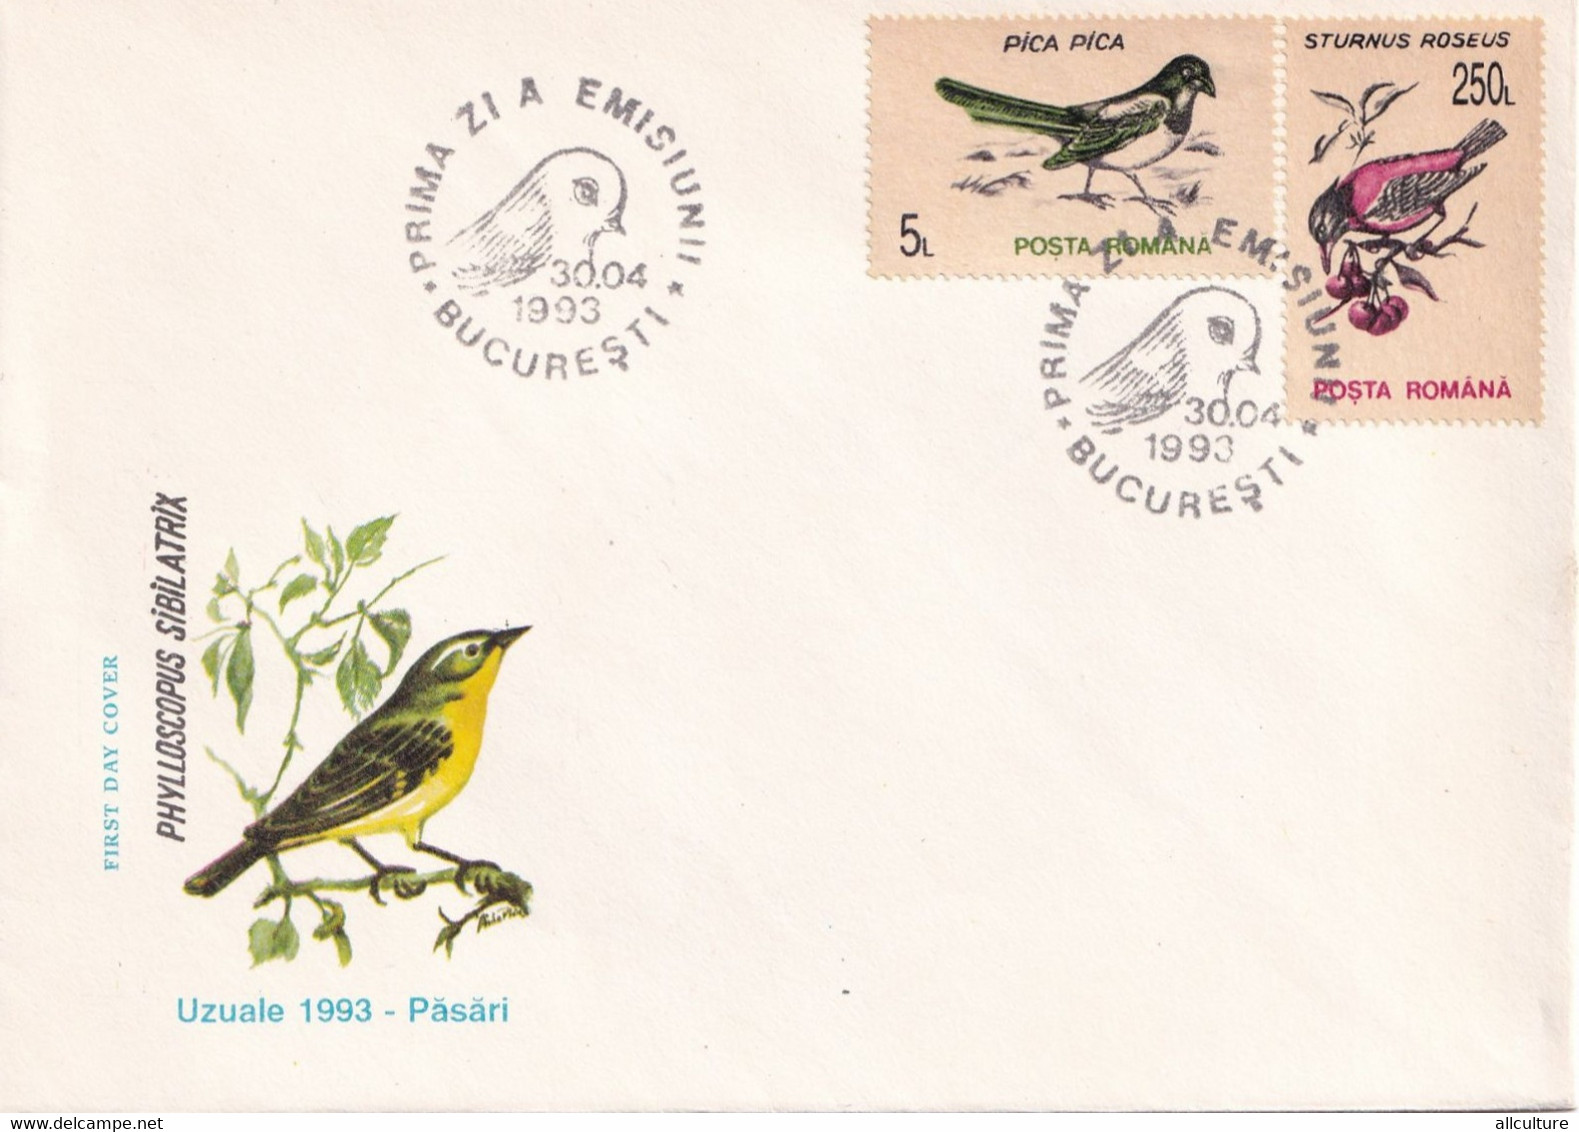 A2711 - Pasari, Uzuale 1993, Romania, Prima Zi De Emisiune Bucuresti 1993  3 Covers FDC - Spechten En Klimvogels